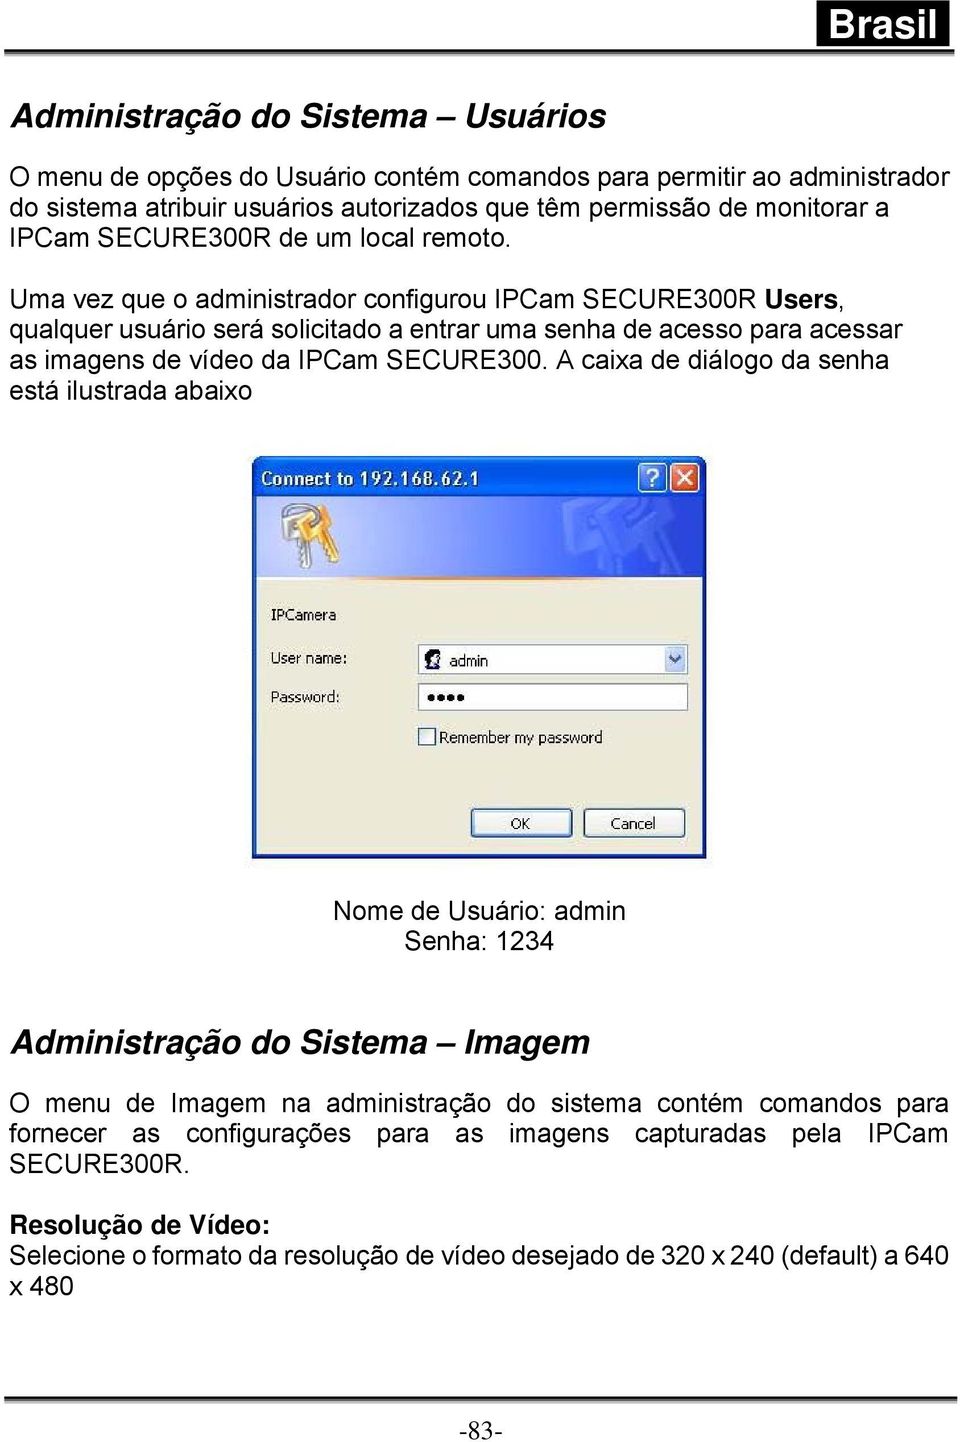 Uma vez que o administrador configurou IPCam SECURE300R Users, qualquer usuário será solicitado a entrar uma senha de acesso para acessar as imagens de vídeo da IPCam SECURE300.